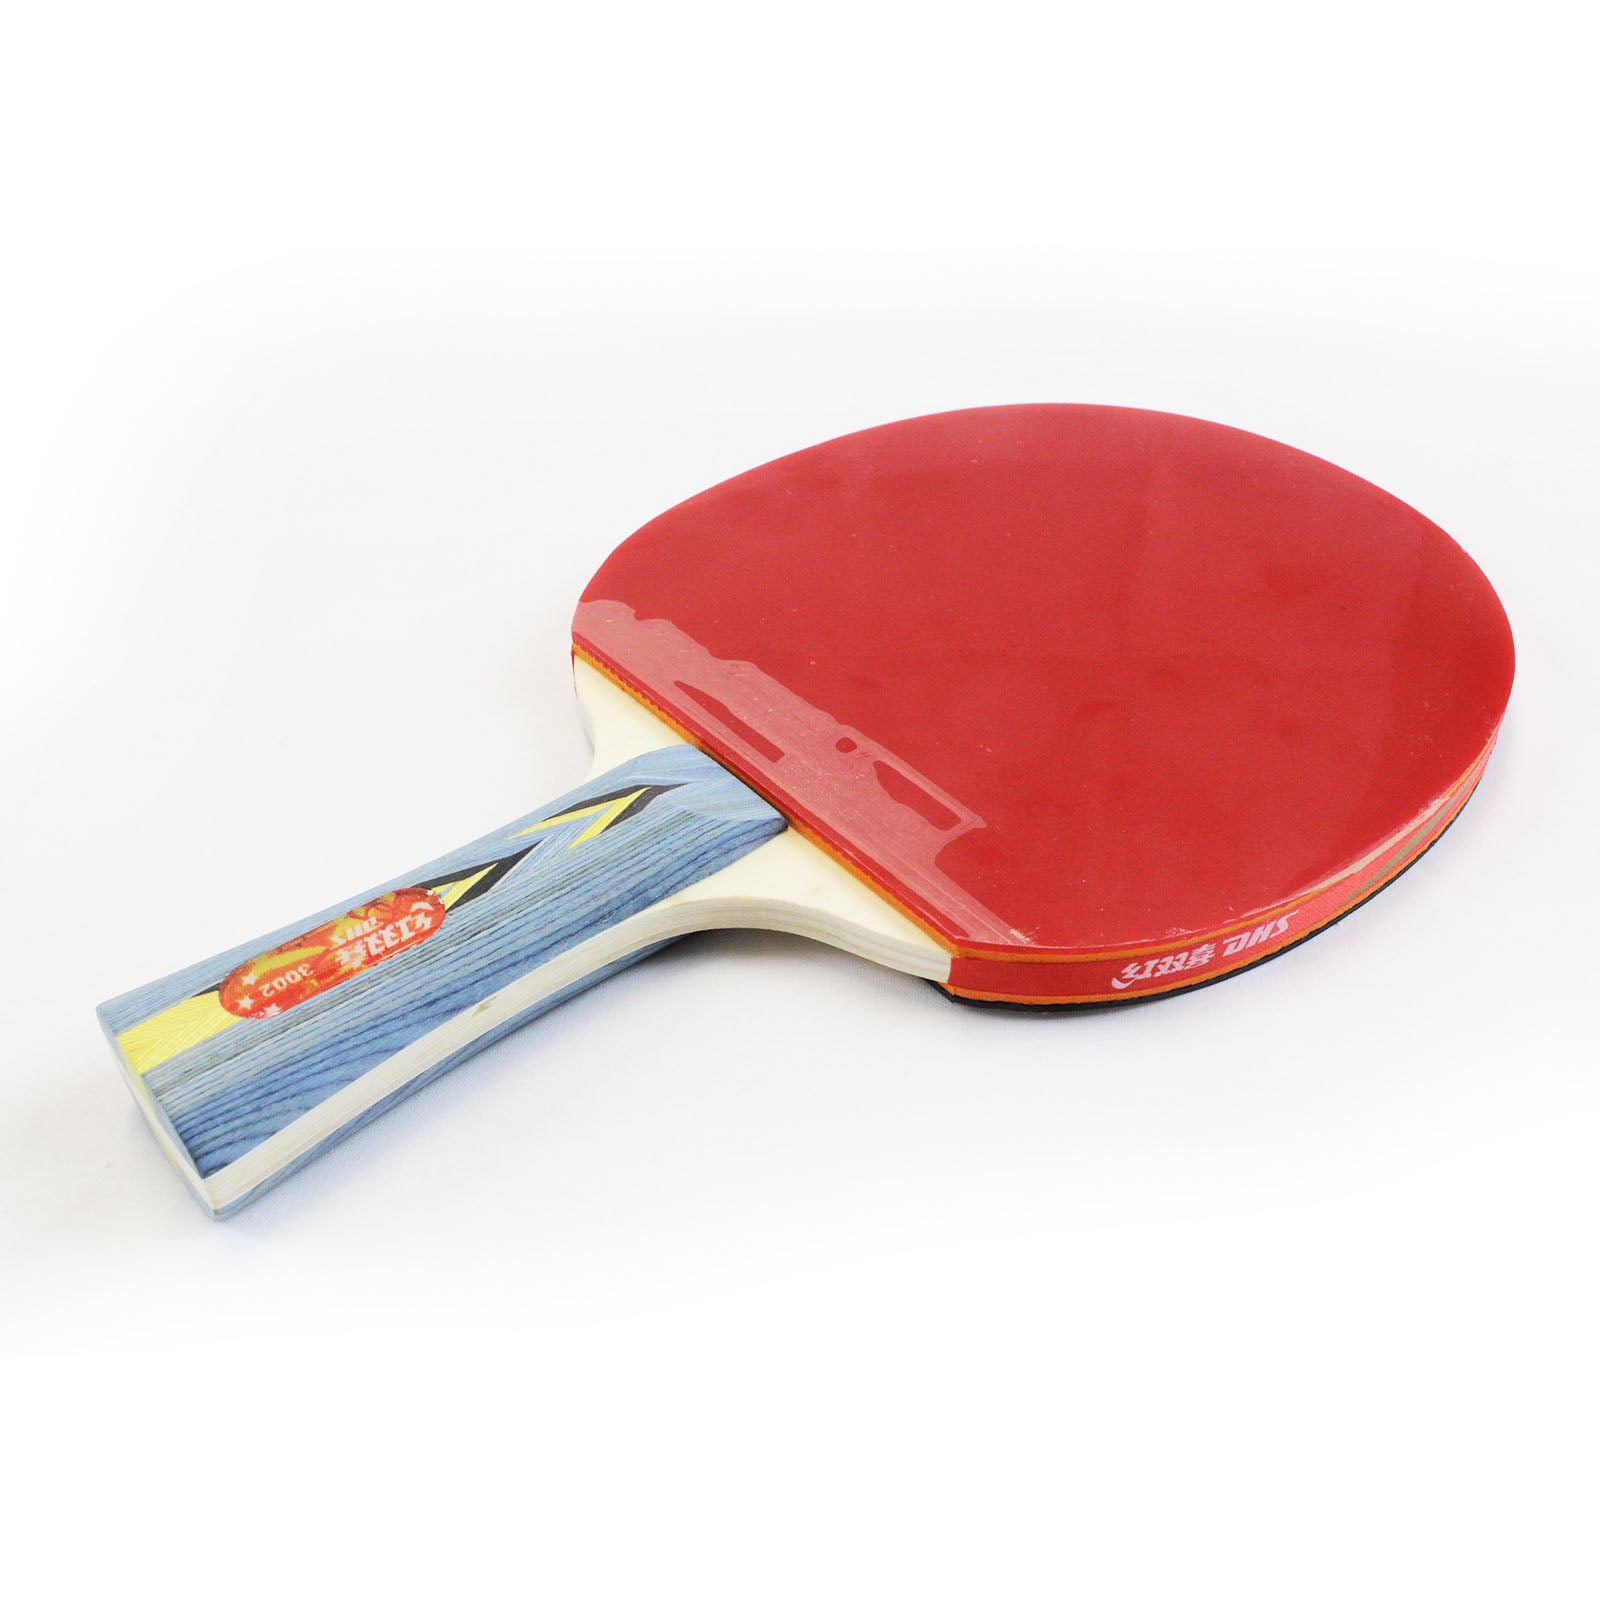 DHS 3 Star Table Tennis Bat / Ping Pong Racket Paddle Long Handle 3002 Pair